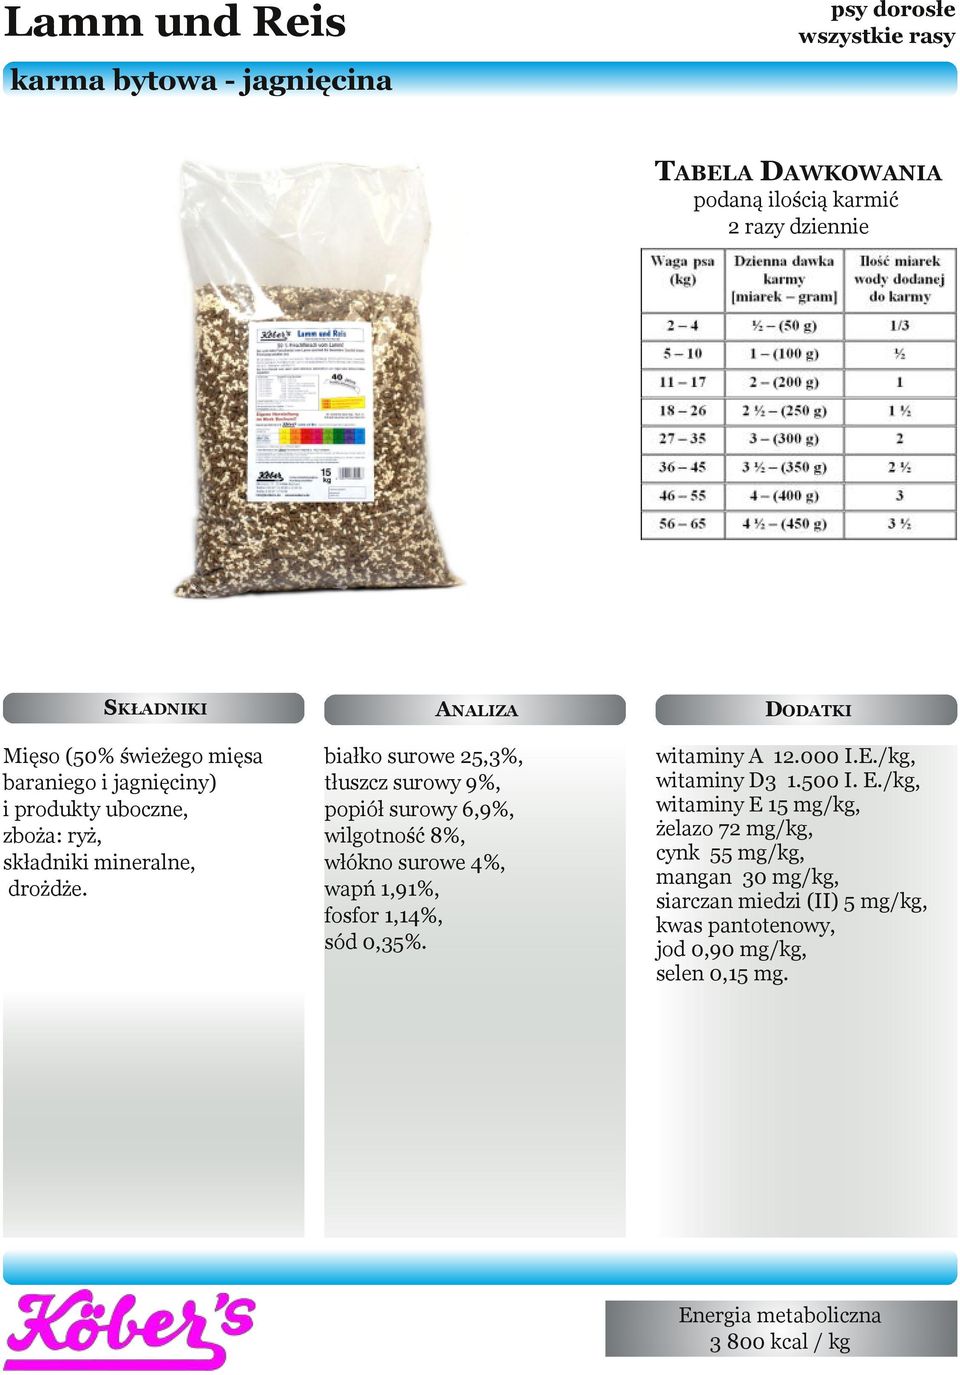 ANALIZA białko surowe 25,3%, tłuszcz surowy 9%, popiół surowy 6,9%, wilgotność 8%, włókno surowe 4%, wapń 1,91%, fosfor 1,14%, sód 0,35%.